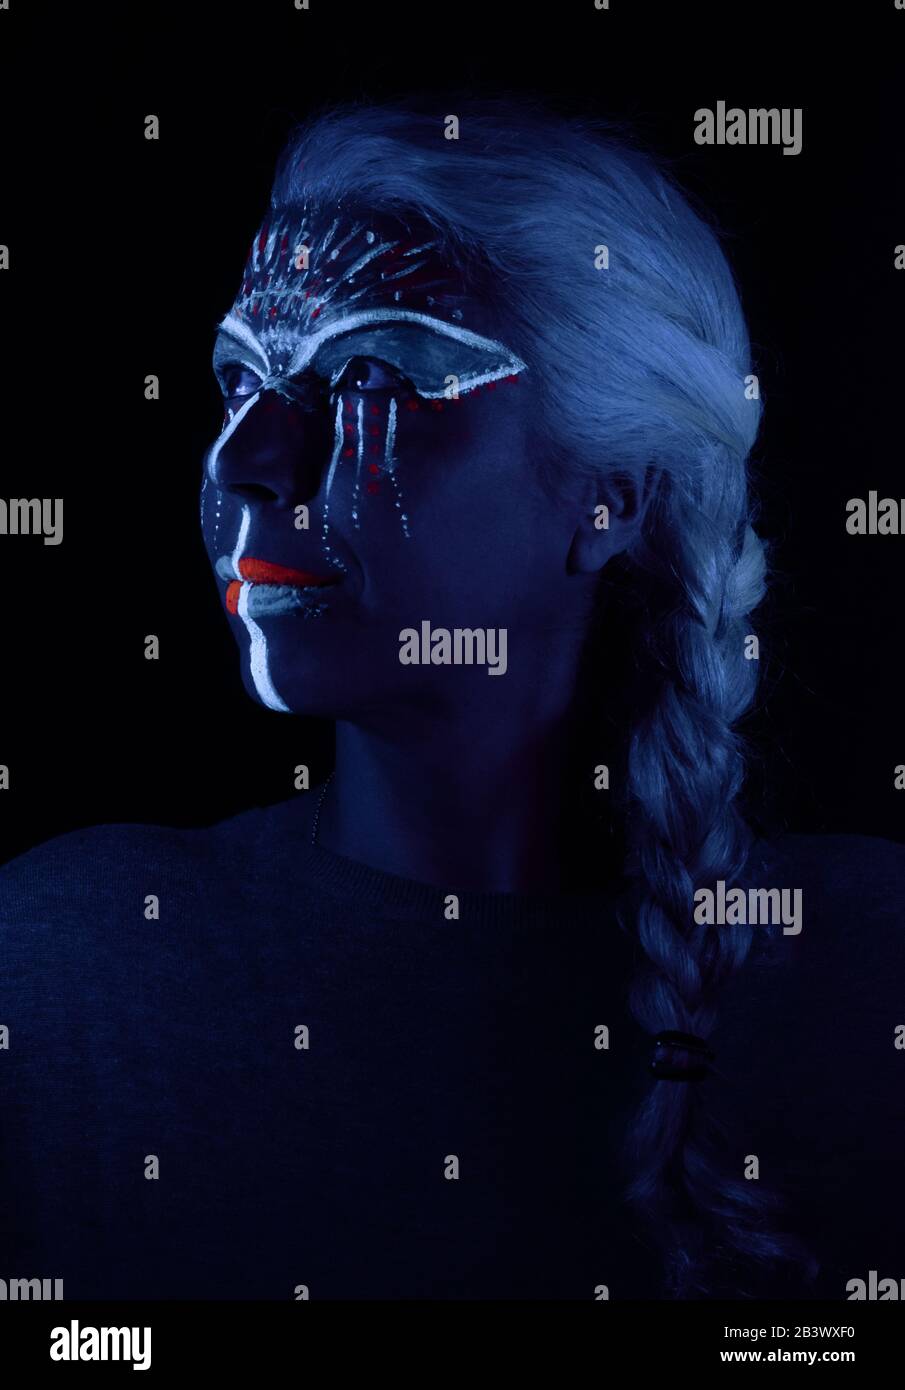 ritratto creativo di donna con capelli bianchi e vernice ultravioletta e luce nera Foto Stock